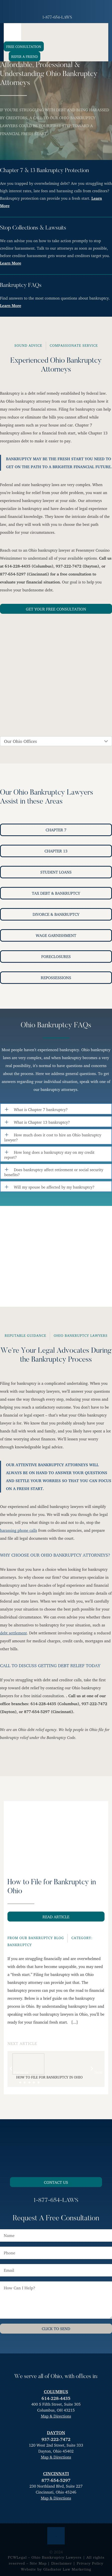 Fesenmyer Law Offices, LLC - Dayton OH Lawyers